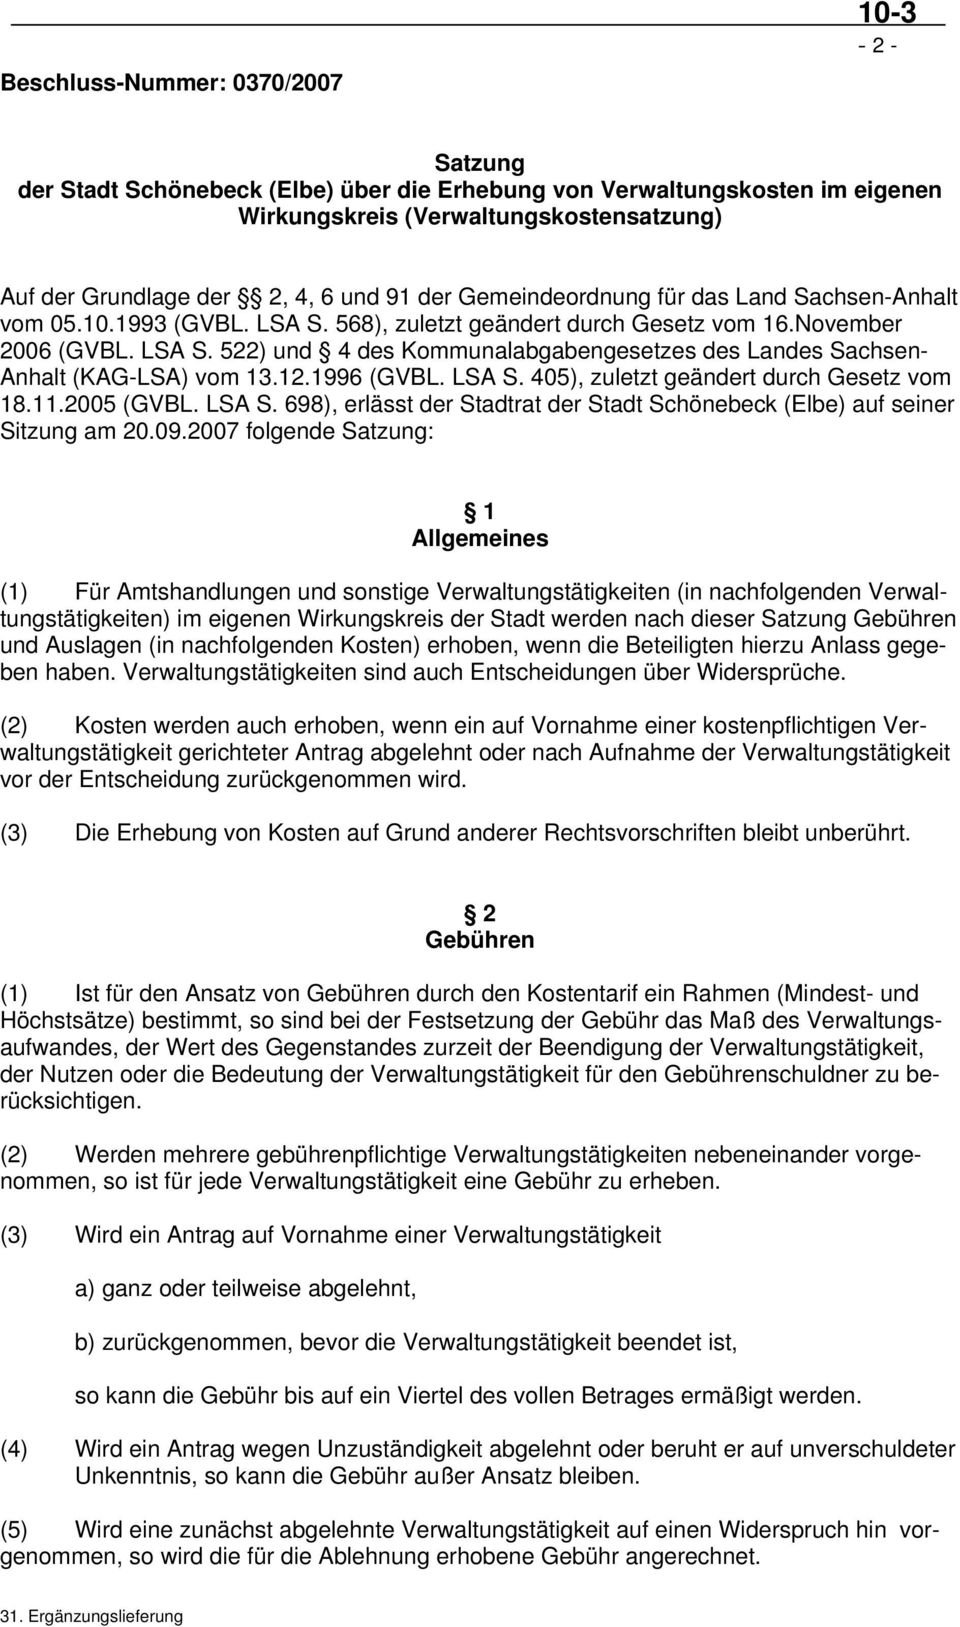 12.1996 (GVBL. LSA S. 405), zuletzt geändert durch Gesetz vom 18.11.2005 (GVBL. LSA S. 698), erlässt der Stadtrat der Stadt Schönebeck (Elbe) auf seiner Sitzung am 20.09.